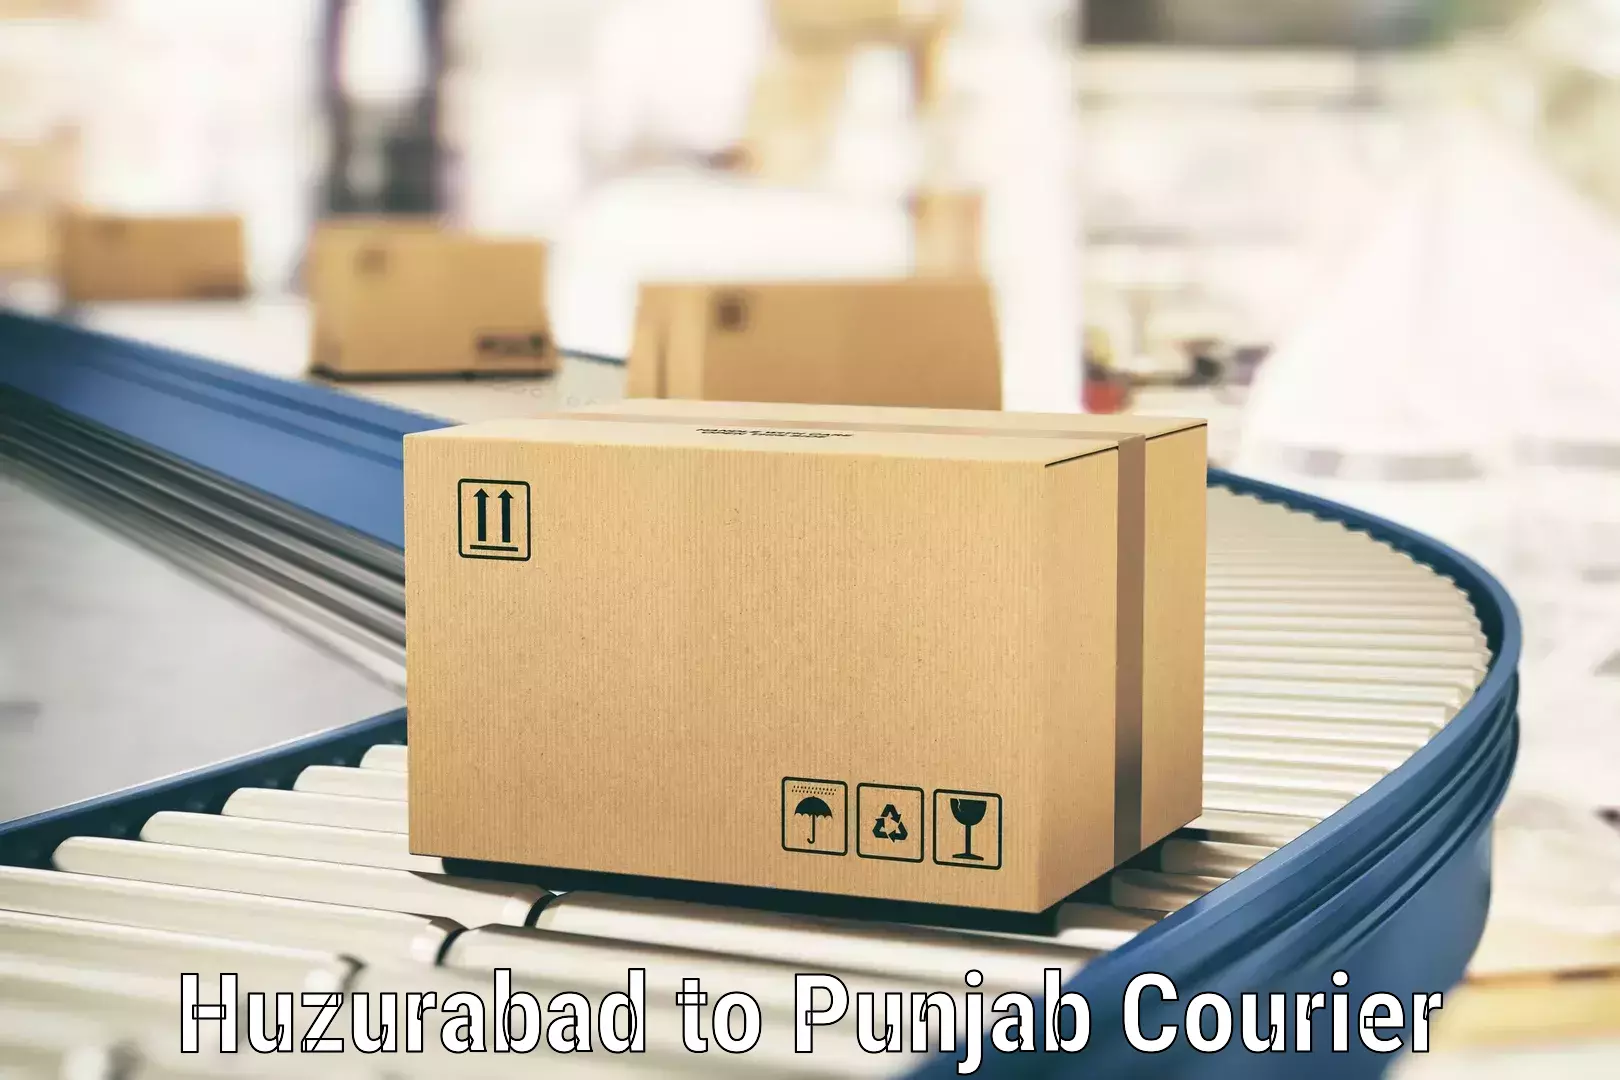 High-efficiency logistics Huzurabad to Begowal